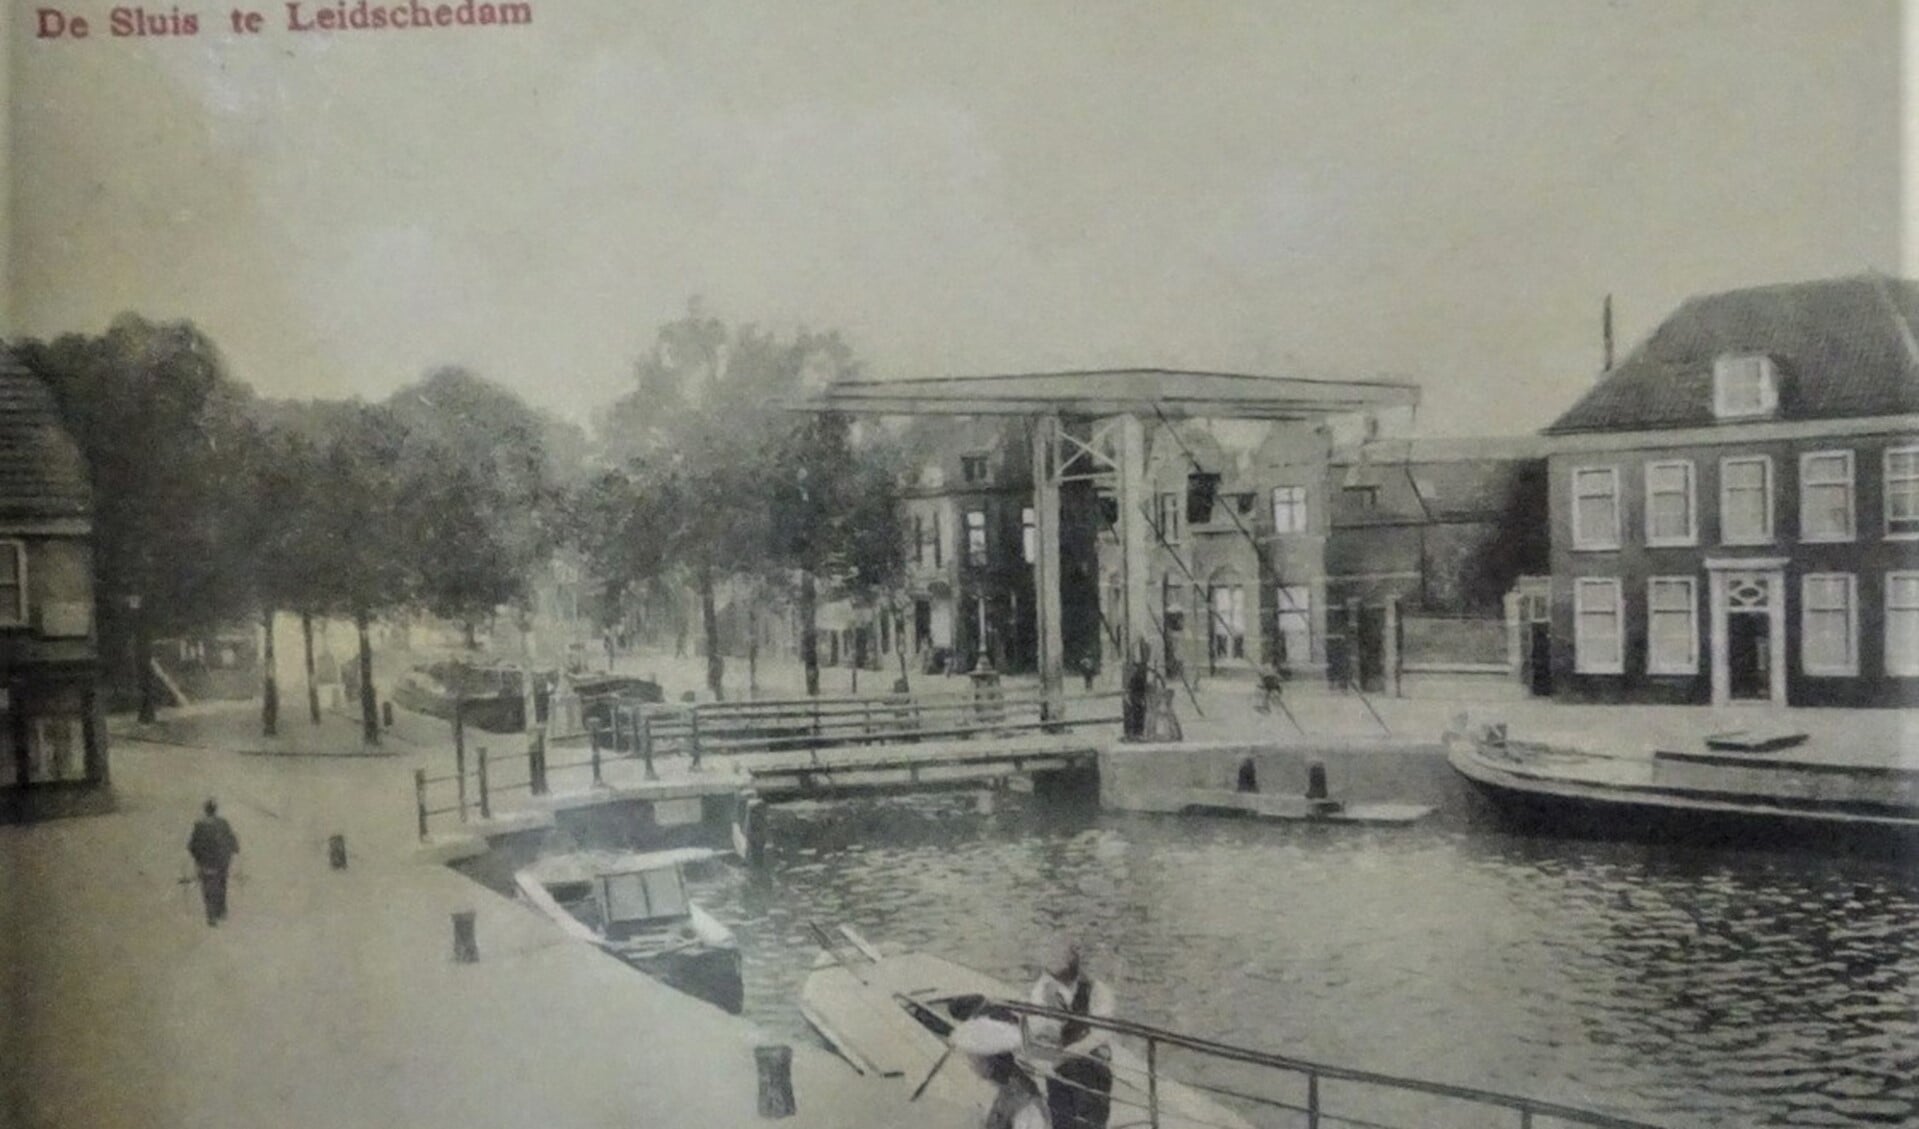 De sluis in Leidschendam in vroeger jaren (archieffoto).